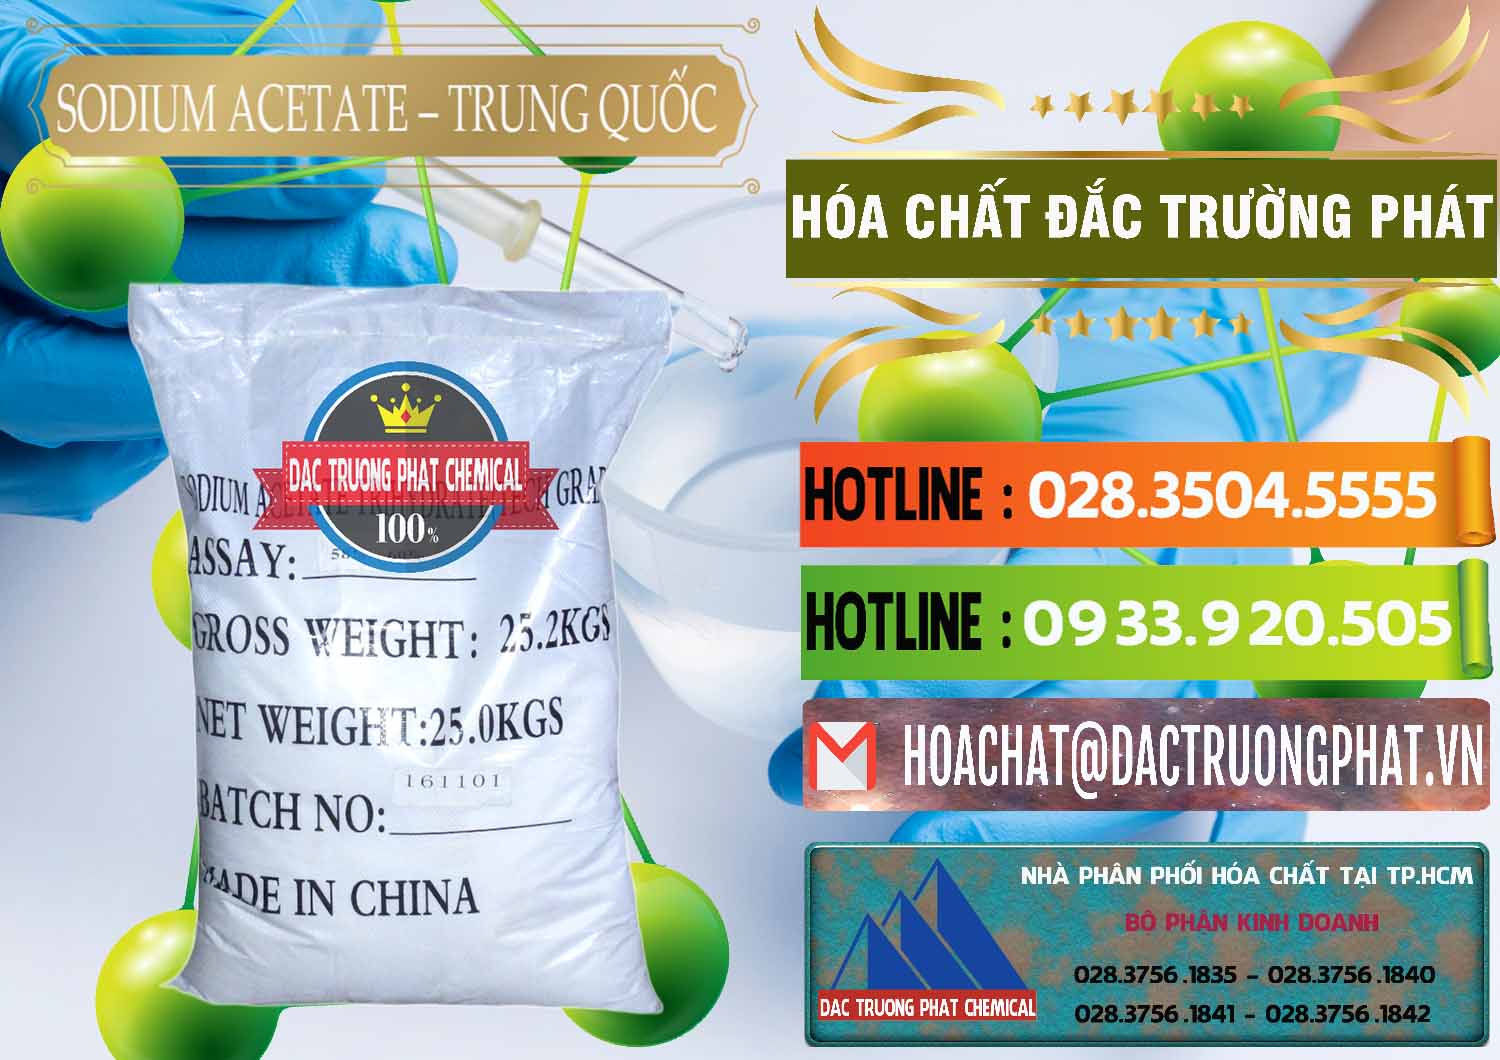 Nơi kinh doanh _ bán Sodium Acetate - Natri Acetate Trung Quốc China - 0134 - Phân phối ( kinh doanh ) hóa chất tại TP.HCM - cungcaphoachat.com.vn